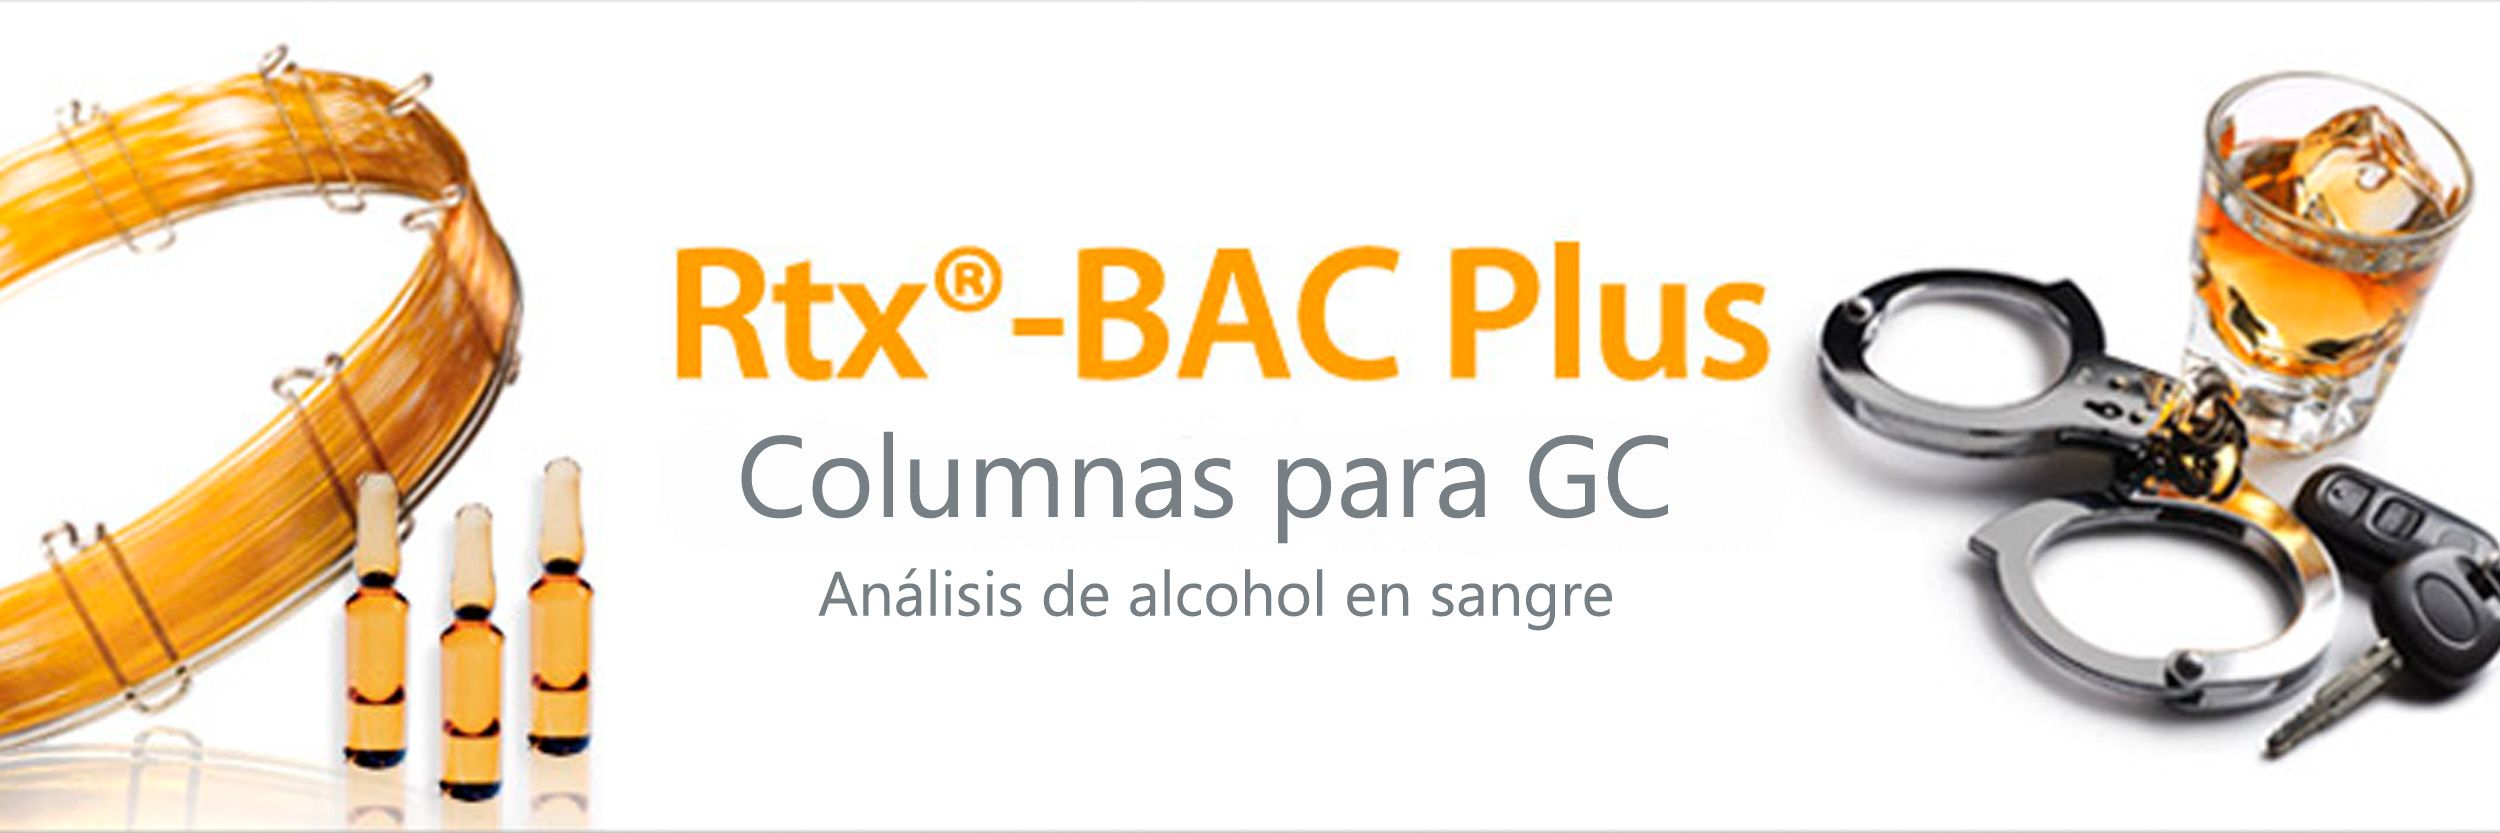 Rtx-BAC Plus, columnas específicas para el análisis de alcohol en sangre